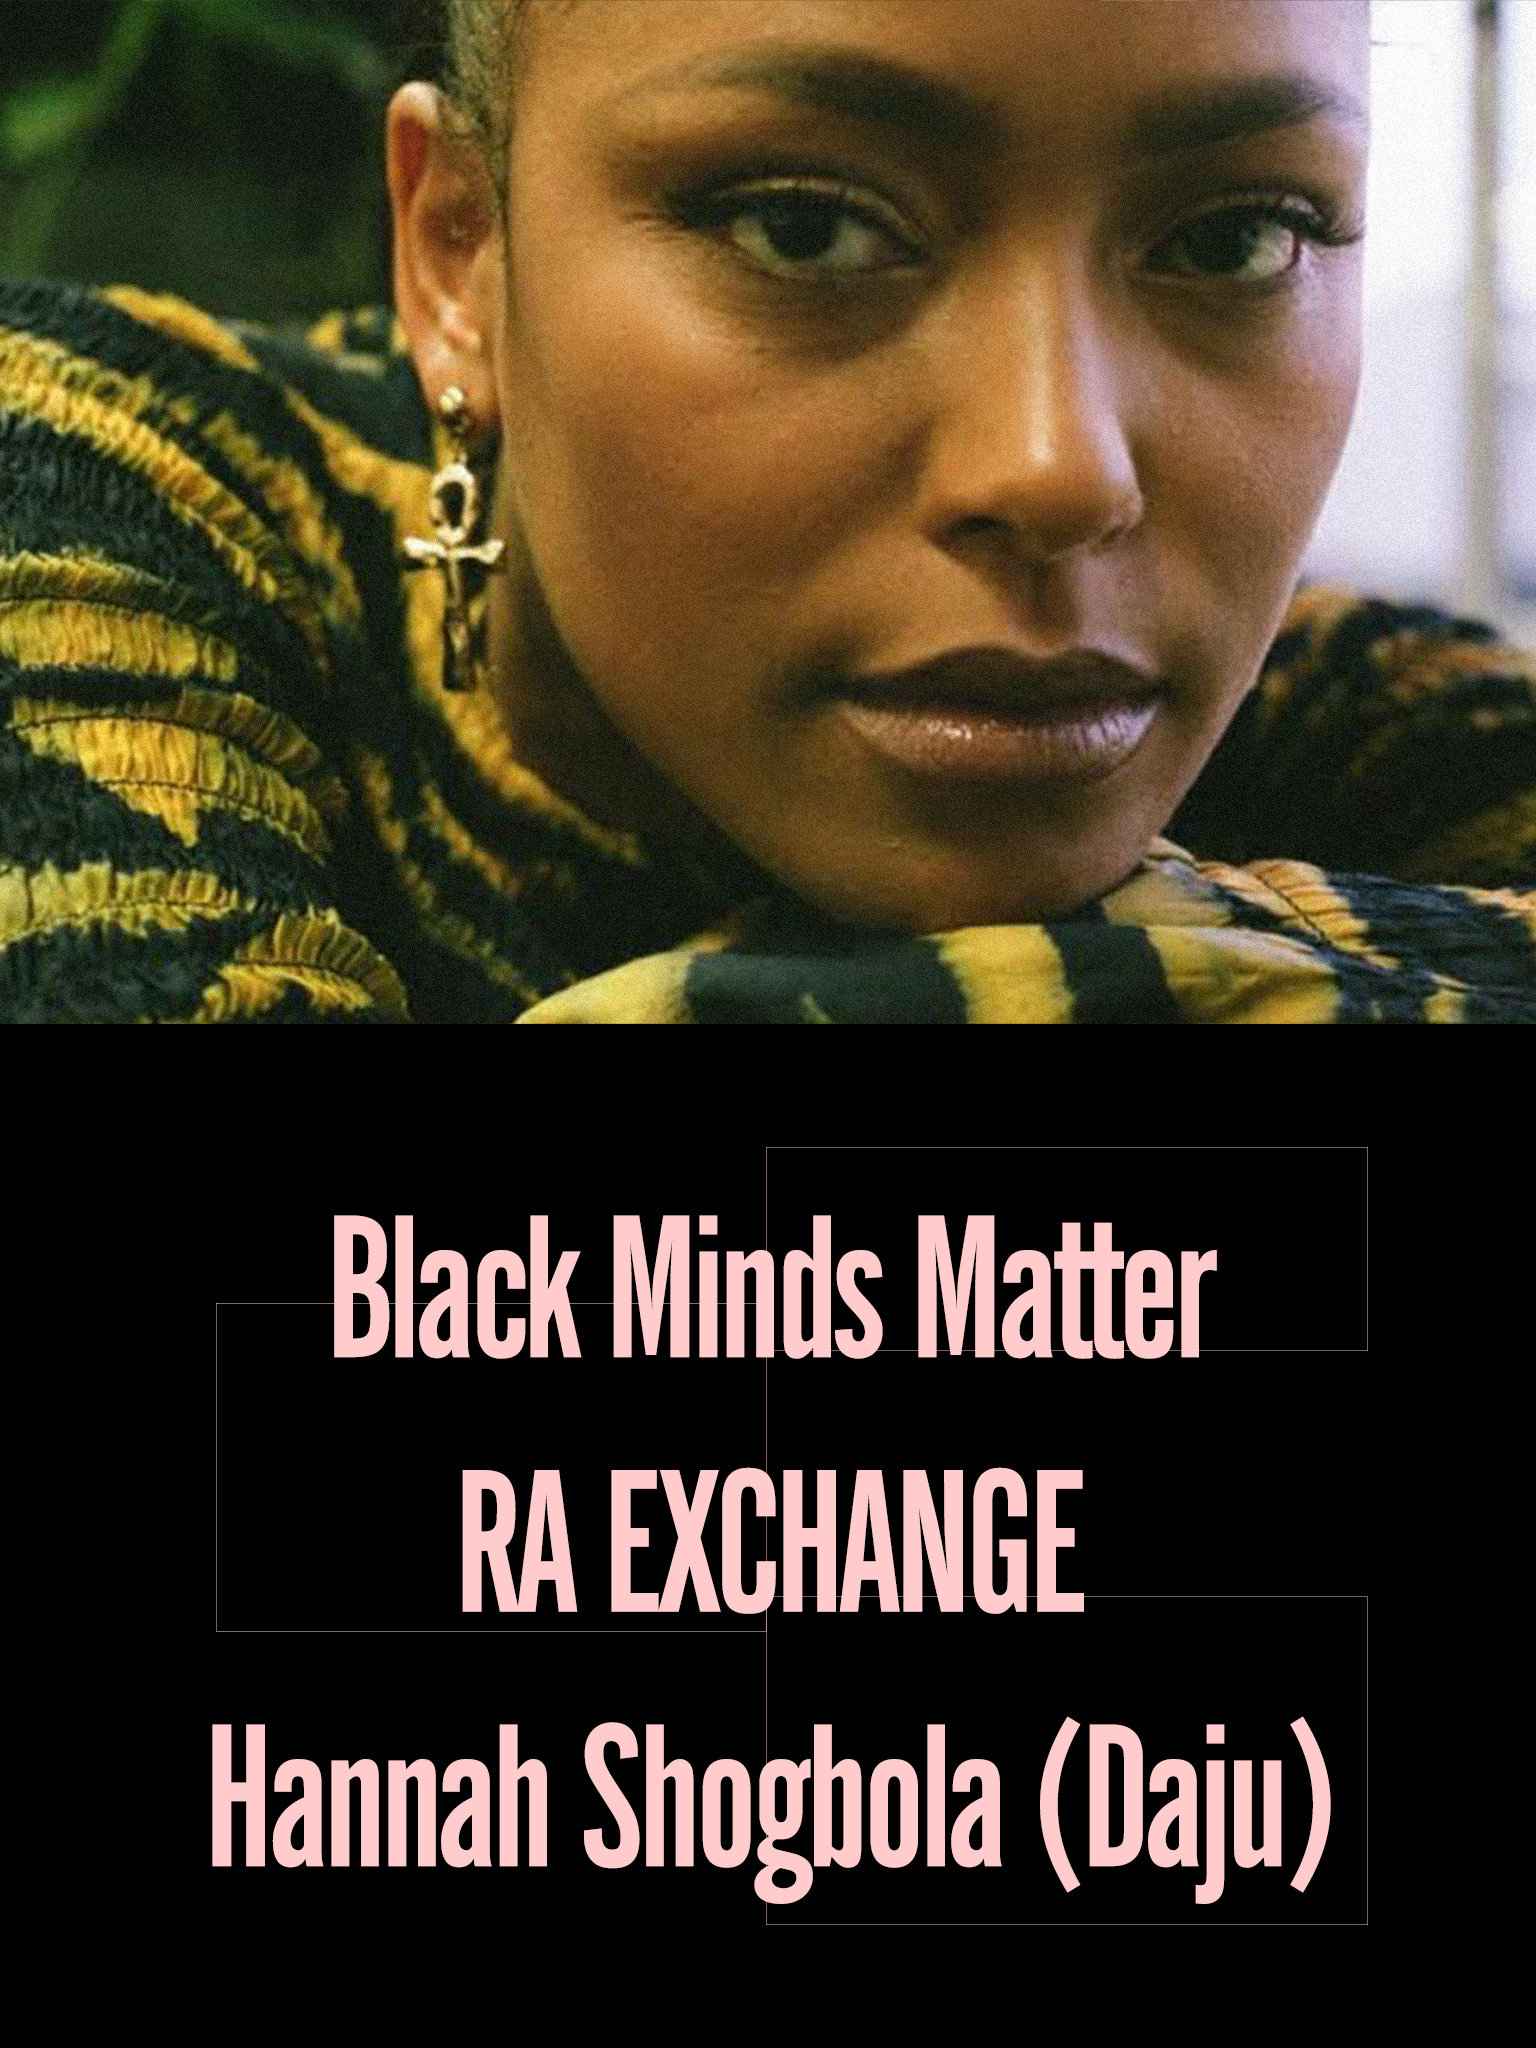 Black Minds Matter UK x RA Exchange: Hannah Shogbola (DAJU)